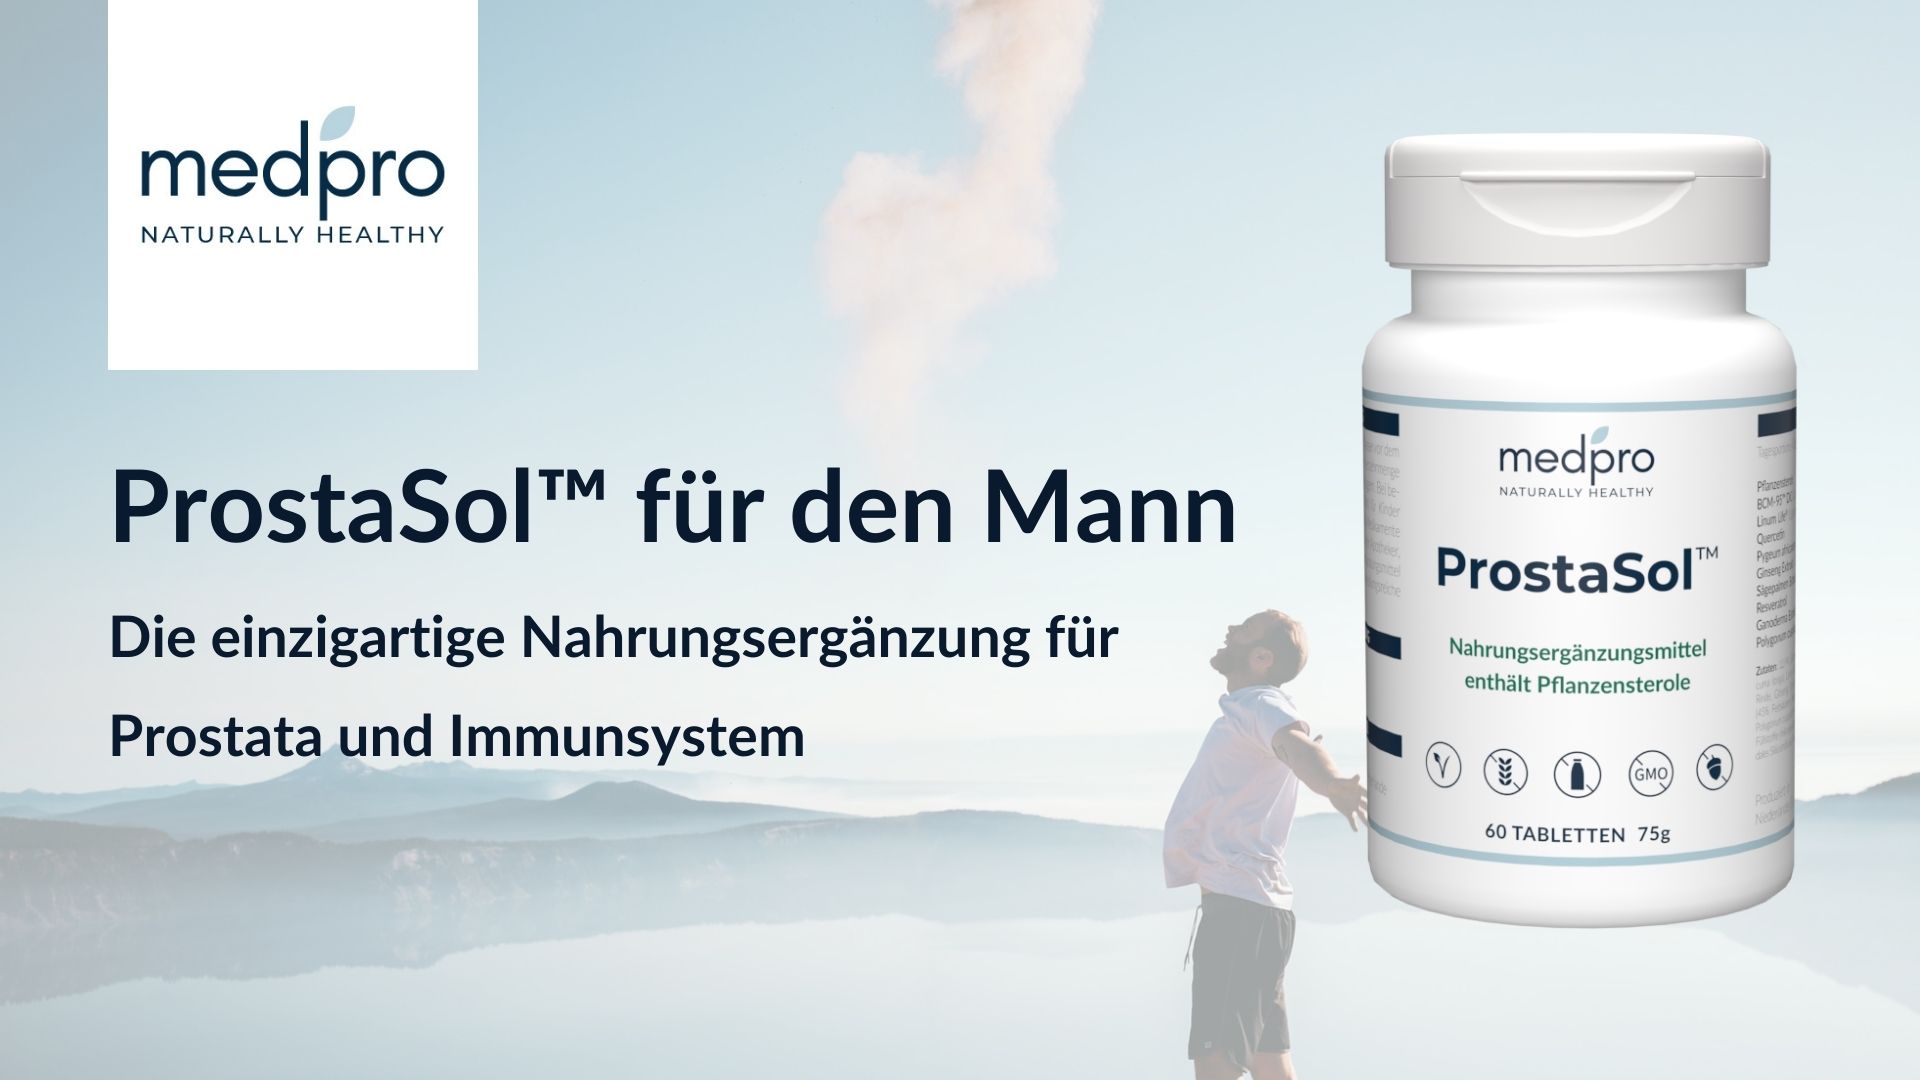 Info-Banner des AMM-Marktplatzpartner medpro für sein Produkt "ProstaSol™"